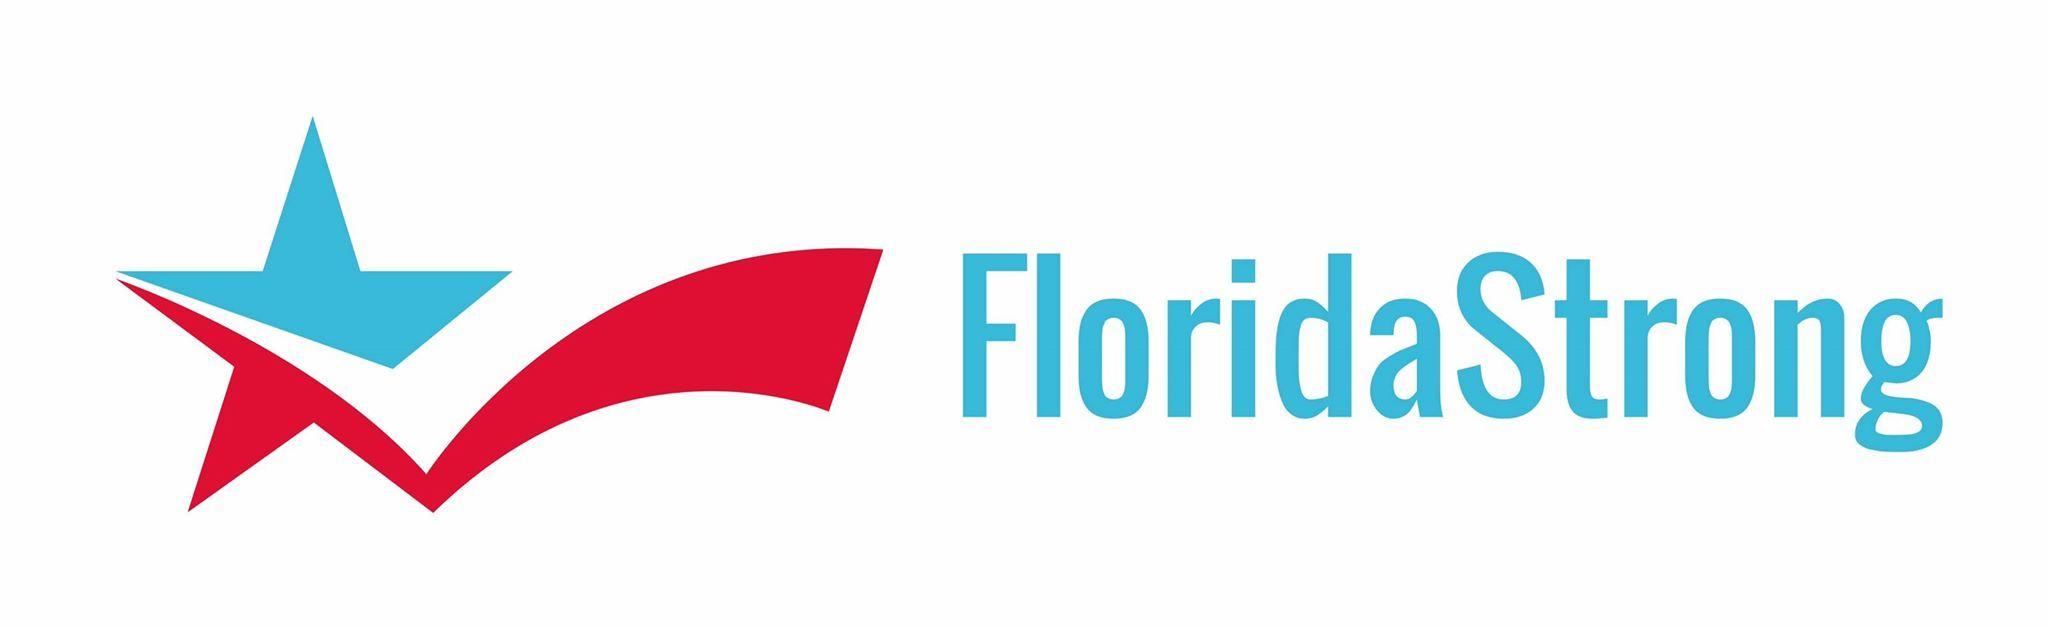 Florida Strong Logo - Join FloridaStrong!